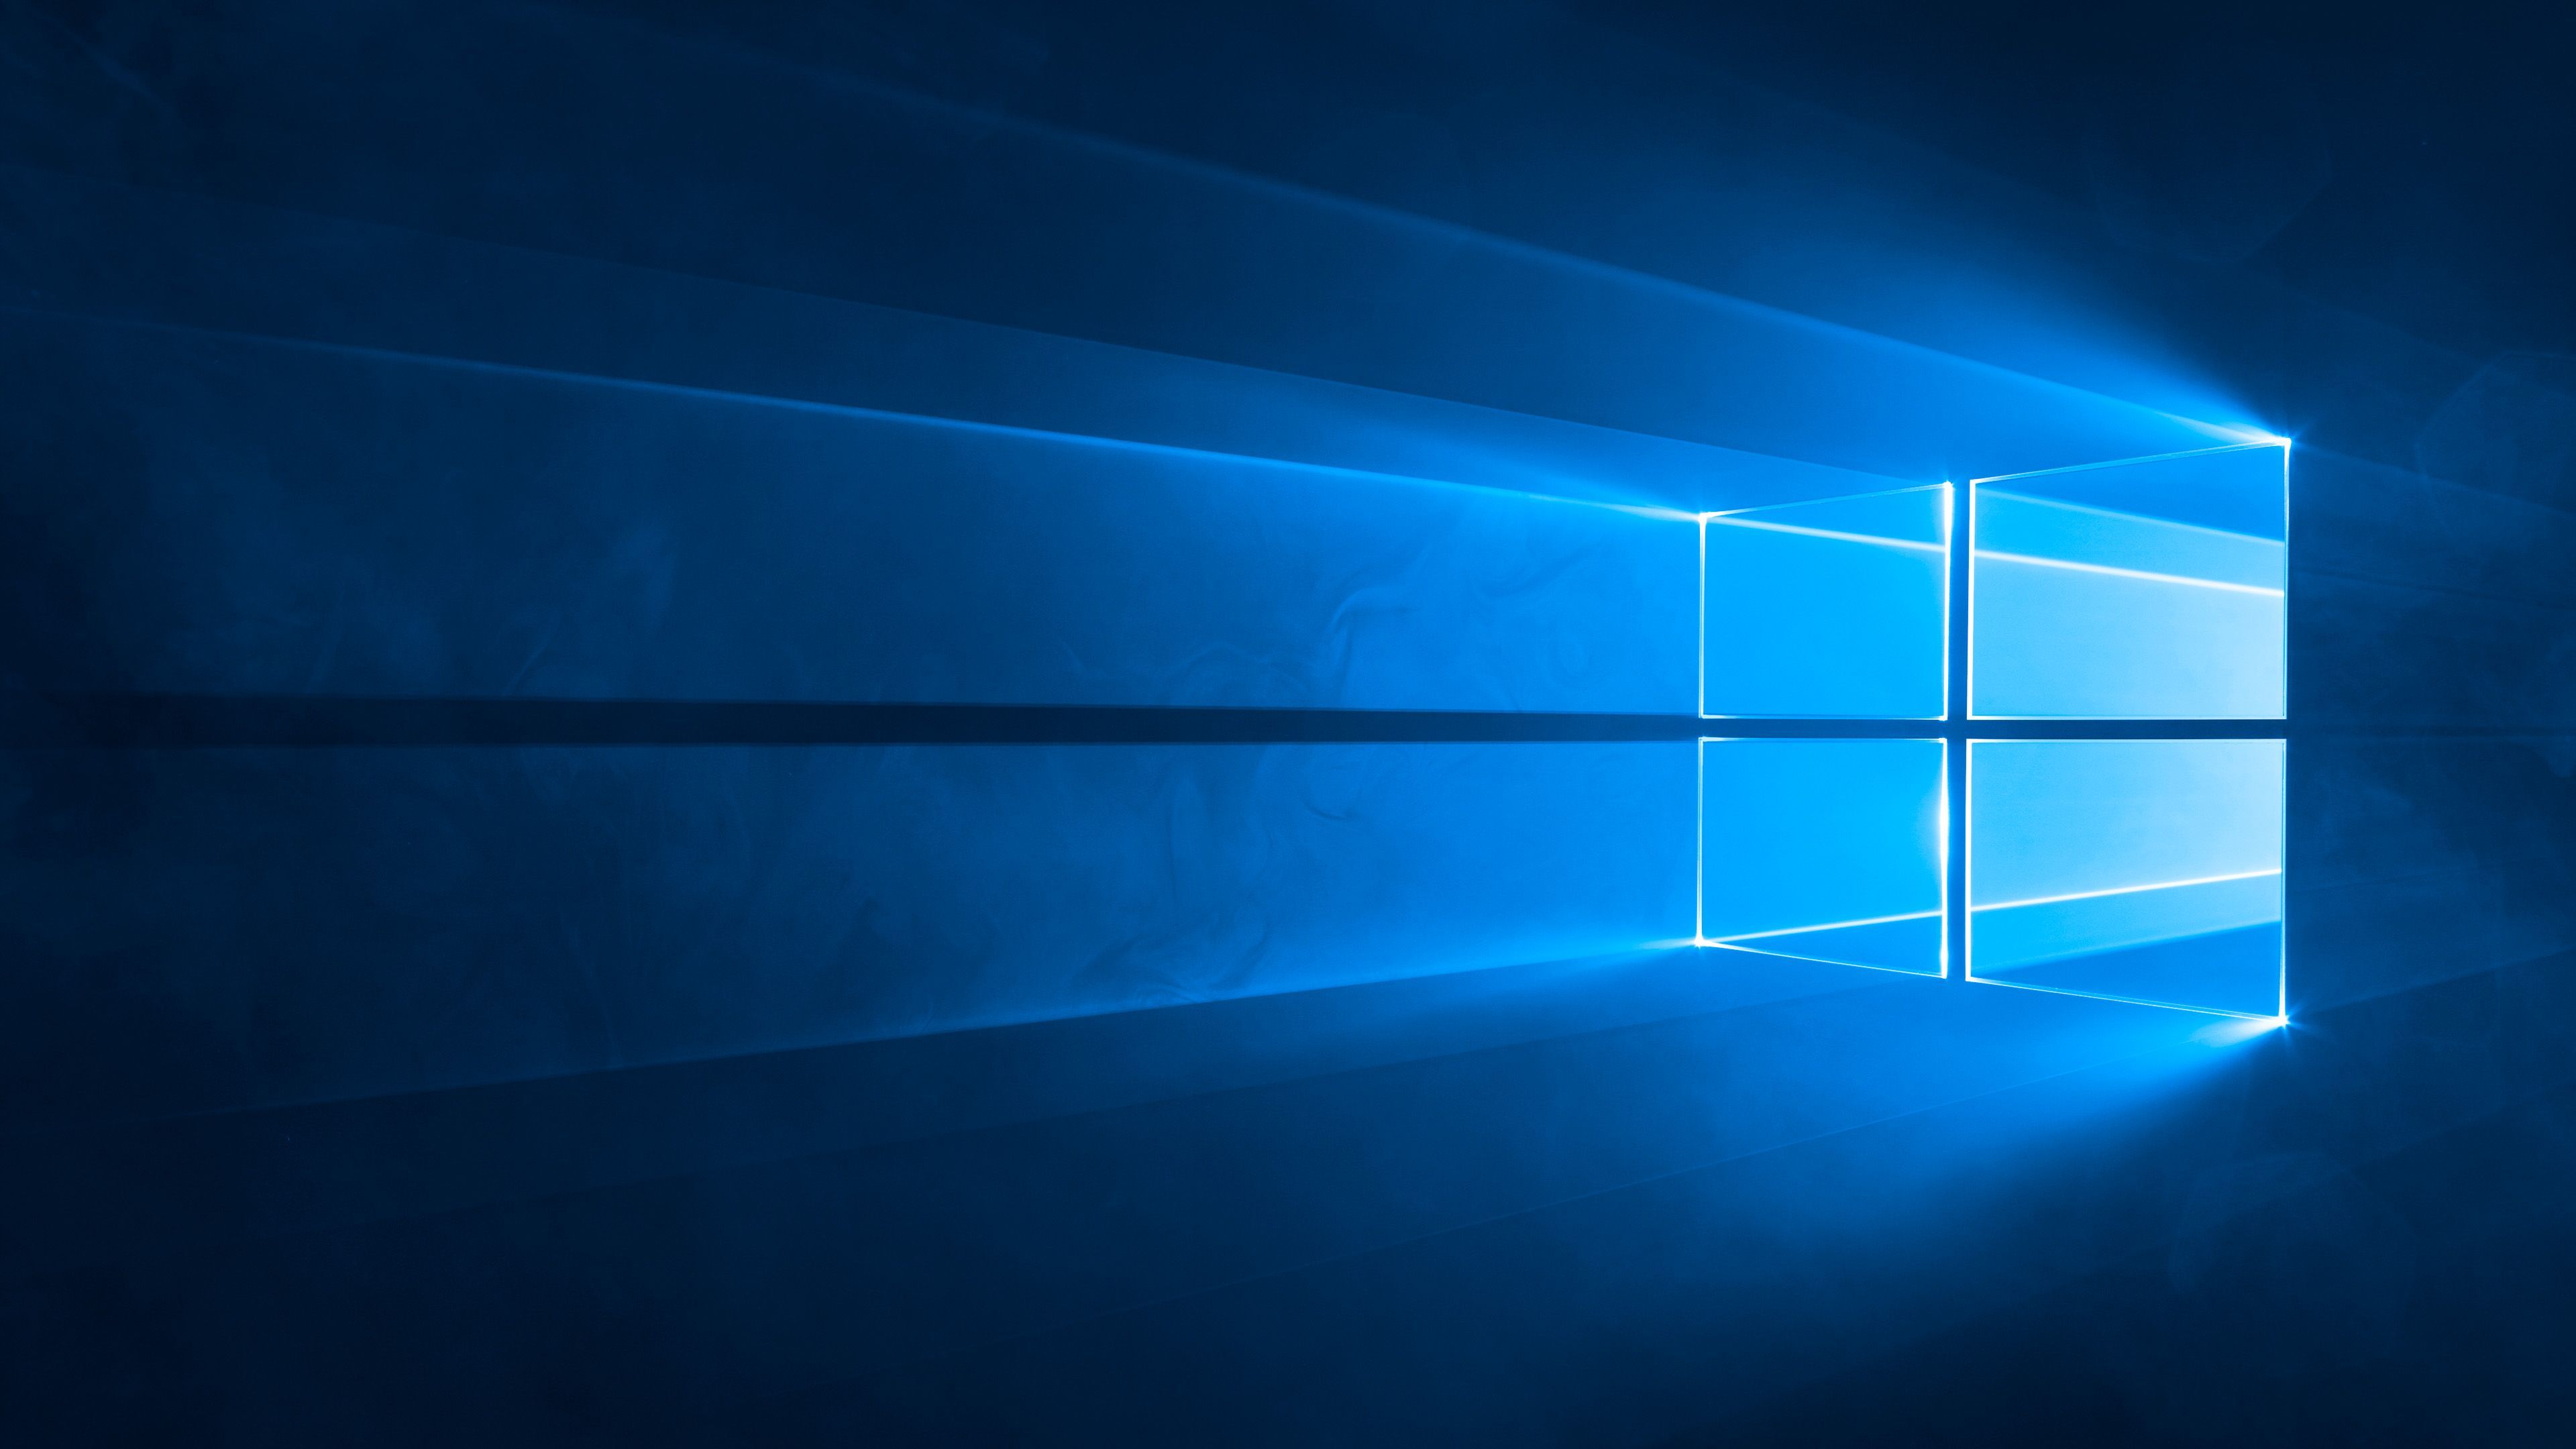 Bạn đang tìm kiếm hình nền Microsoft Windows 10 đẹp nhất? Với WallpaperDog, bạn sẽ có hàng ngàn lựa chọn chất lượng cao để trang trí màn hình của mình. Từ các hình nền chủ đề đến hình nền mặc định, bạn có thể tìm thấy mọi thứ tại đây. Hãy truy cập trang web của chúng tôi và tải về những hình nền Windows 10 đẹp nhất ngay bây giờ!